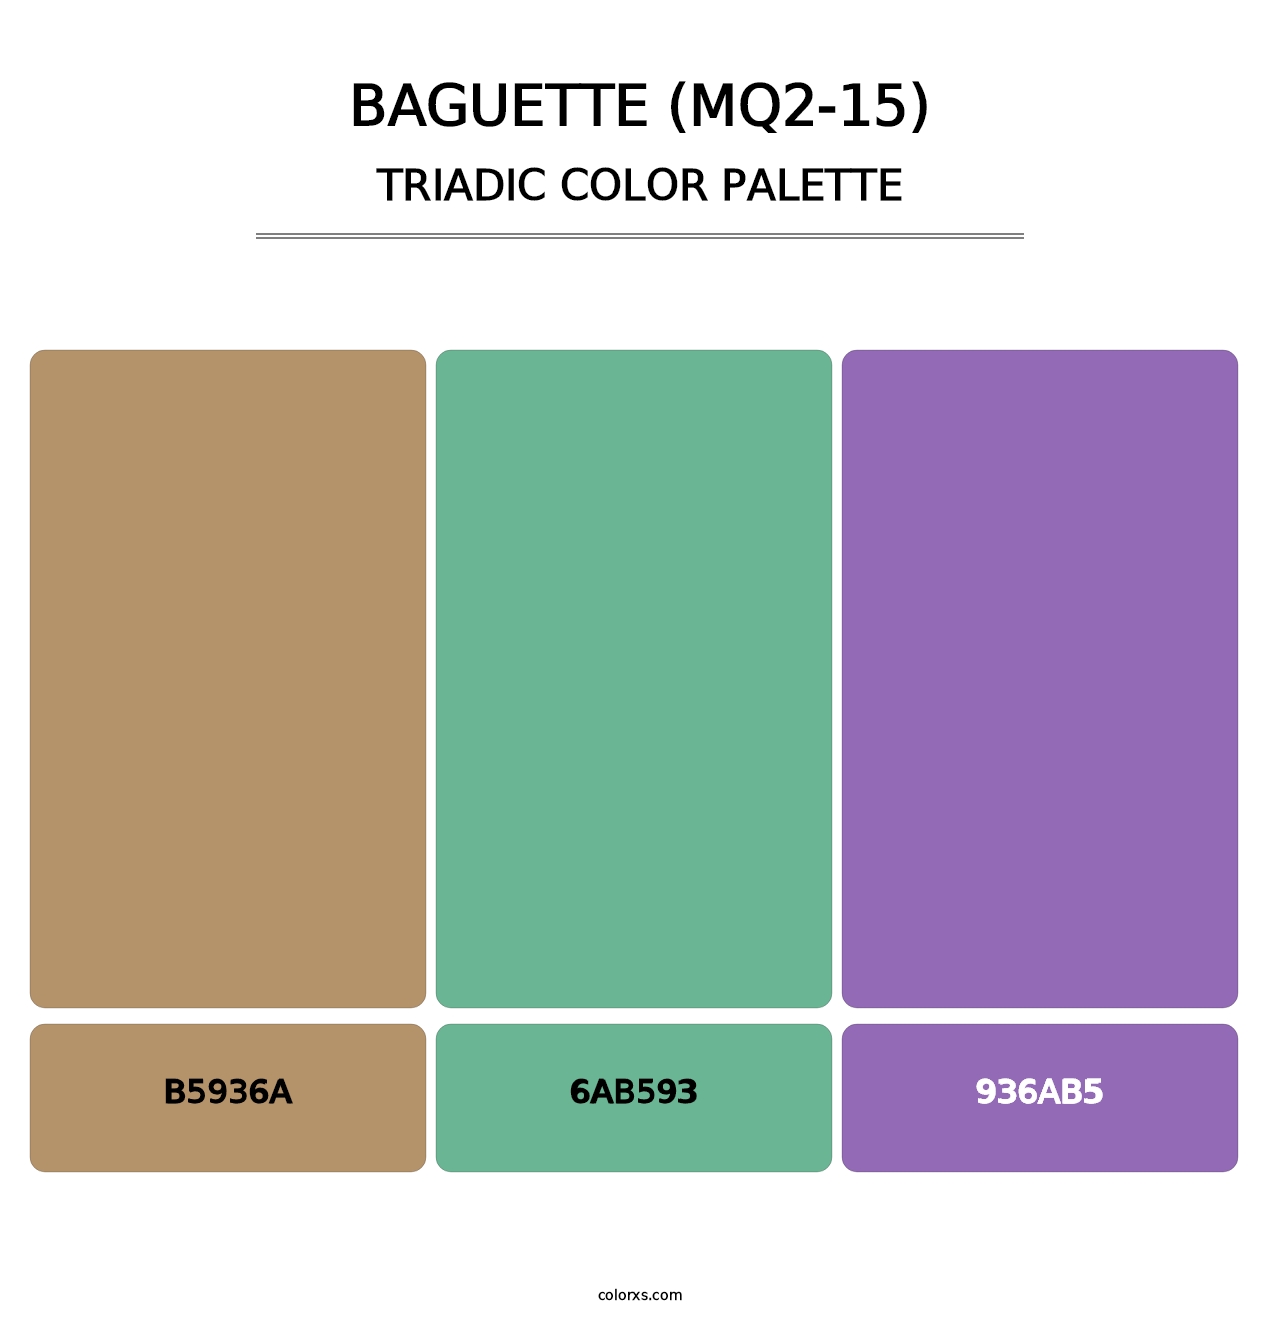 Baguette (MQ2-15) - Triadic Color Palette